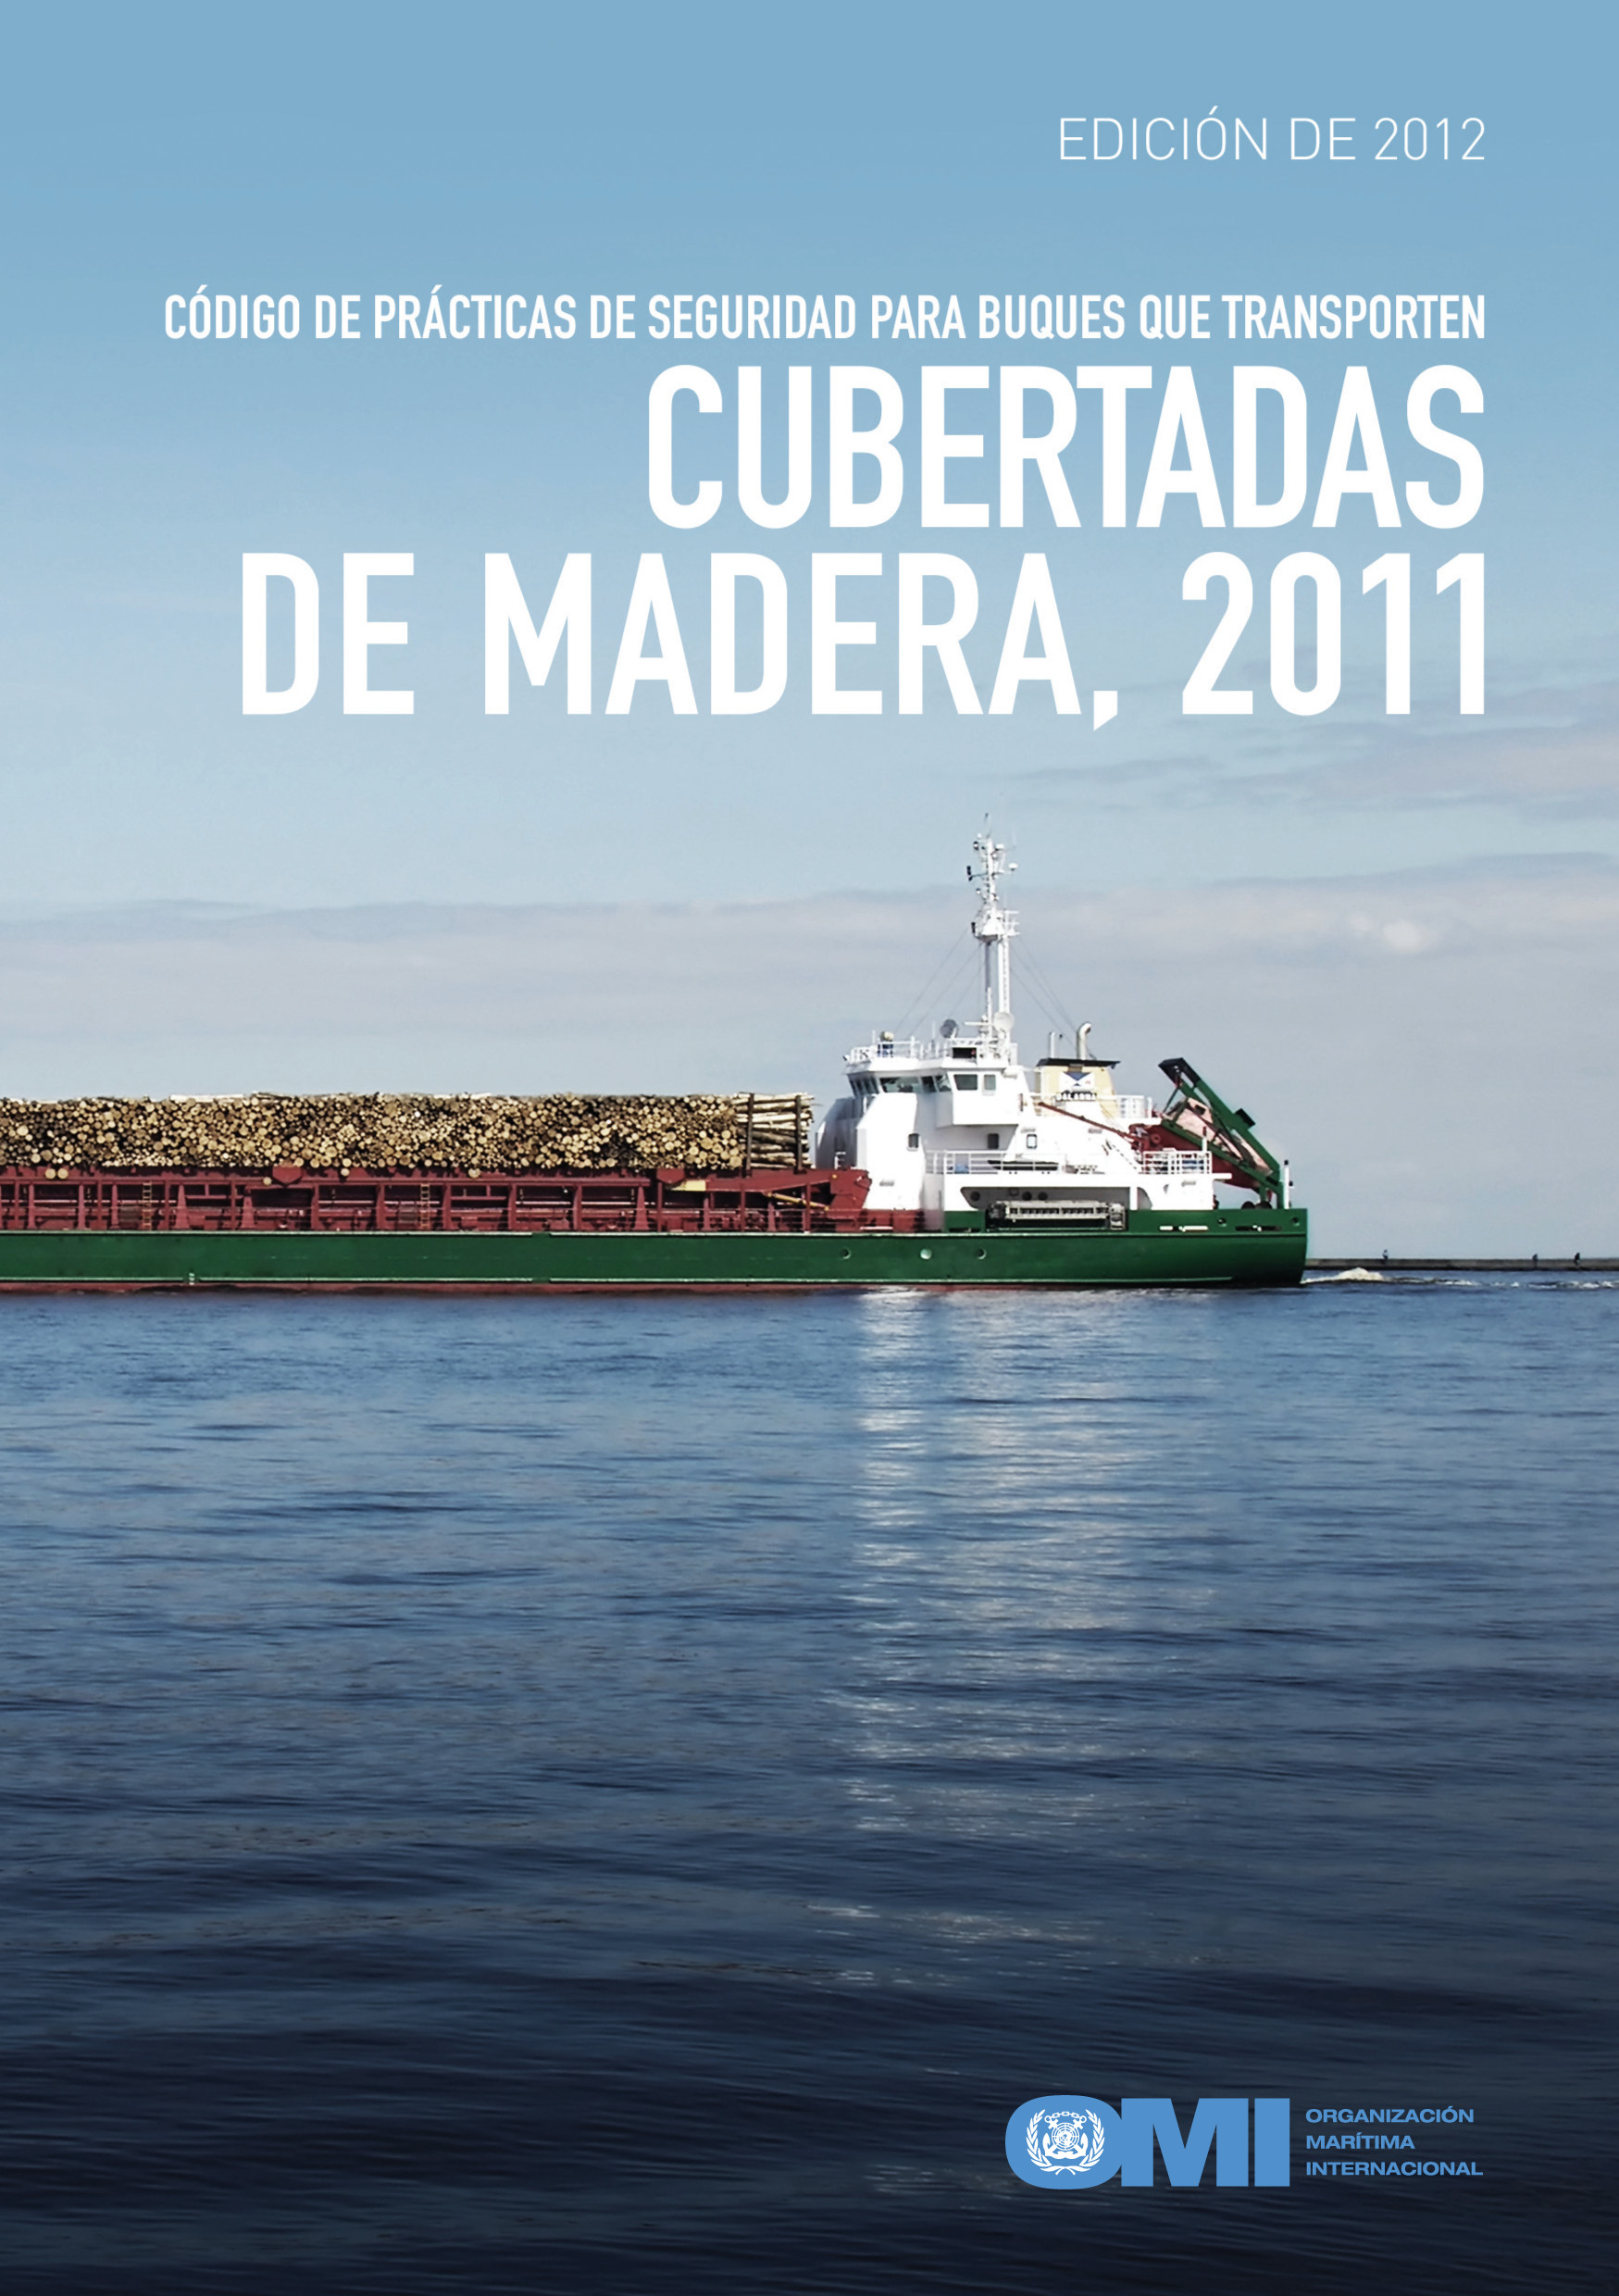 Código de prácticas de seguridad para buques que transporten cubertadas de madera, 2011